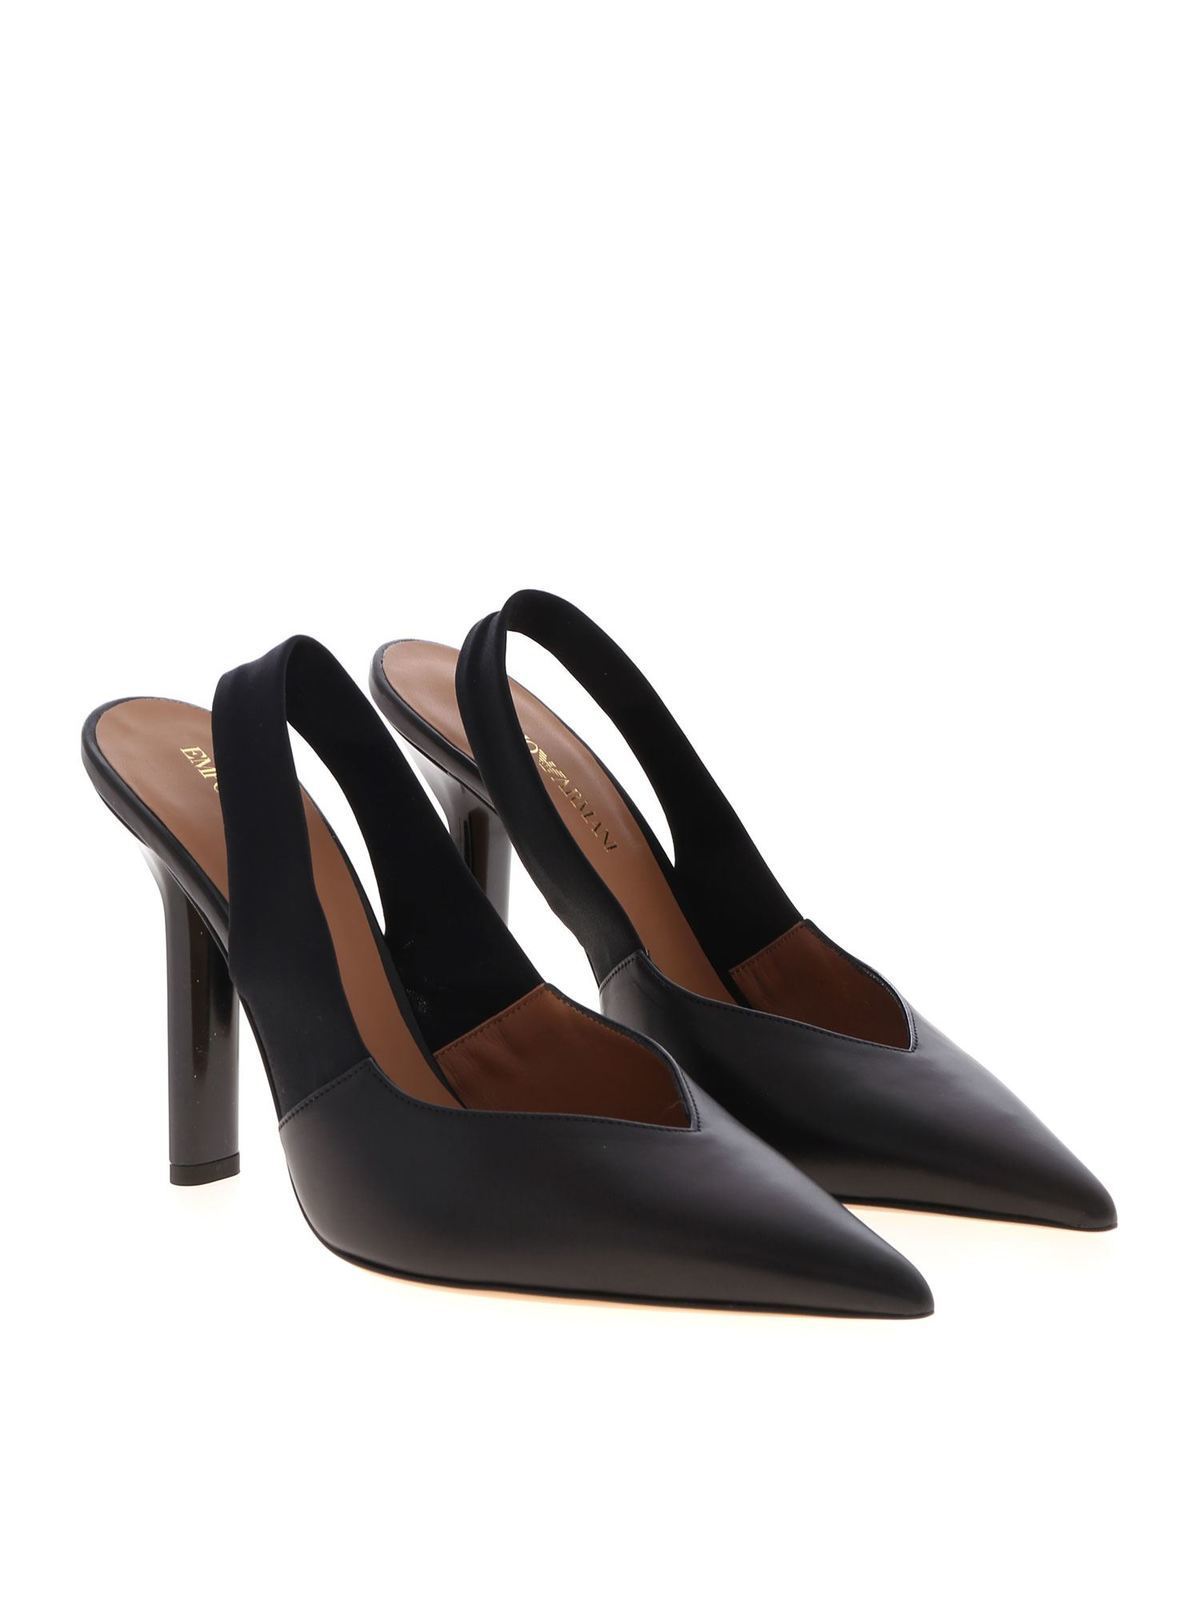 Court shoes Emporio Armani - Black leather pumps - X3E377XM338K001